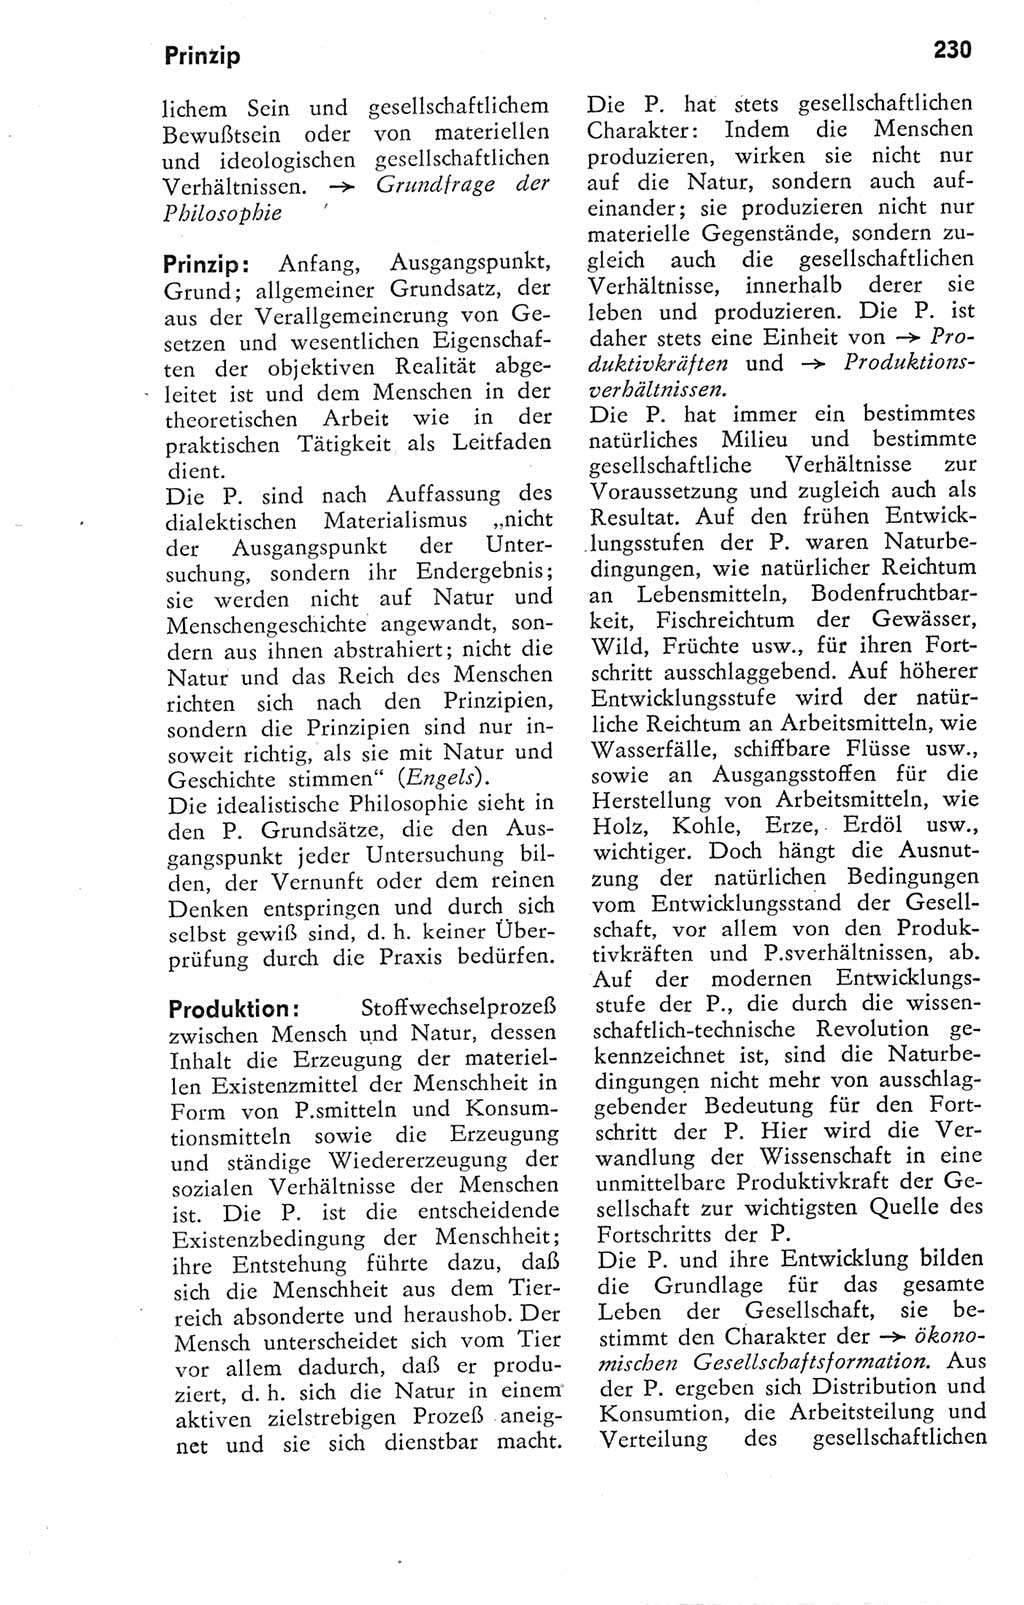 Kleines Wörterbuch der marxistisch-leninistischen Philosophie [Deutsche Demokratische Republik (DDR)] 1974, Seite 230 (Kl. Wb. ML Phil. DDR 1974, S. 230)